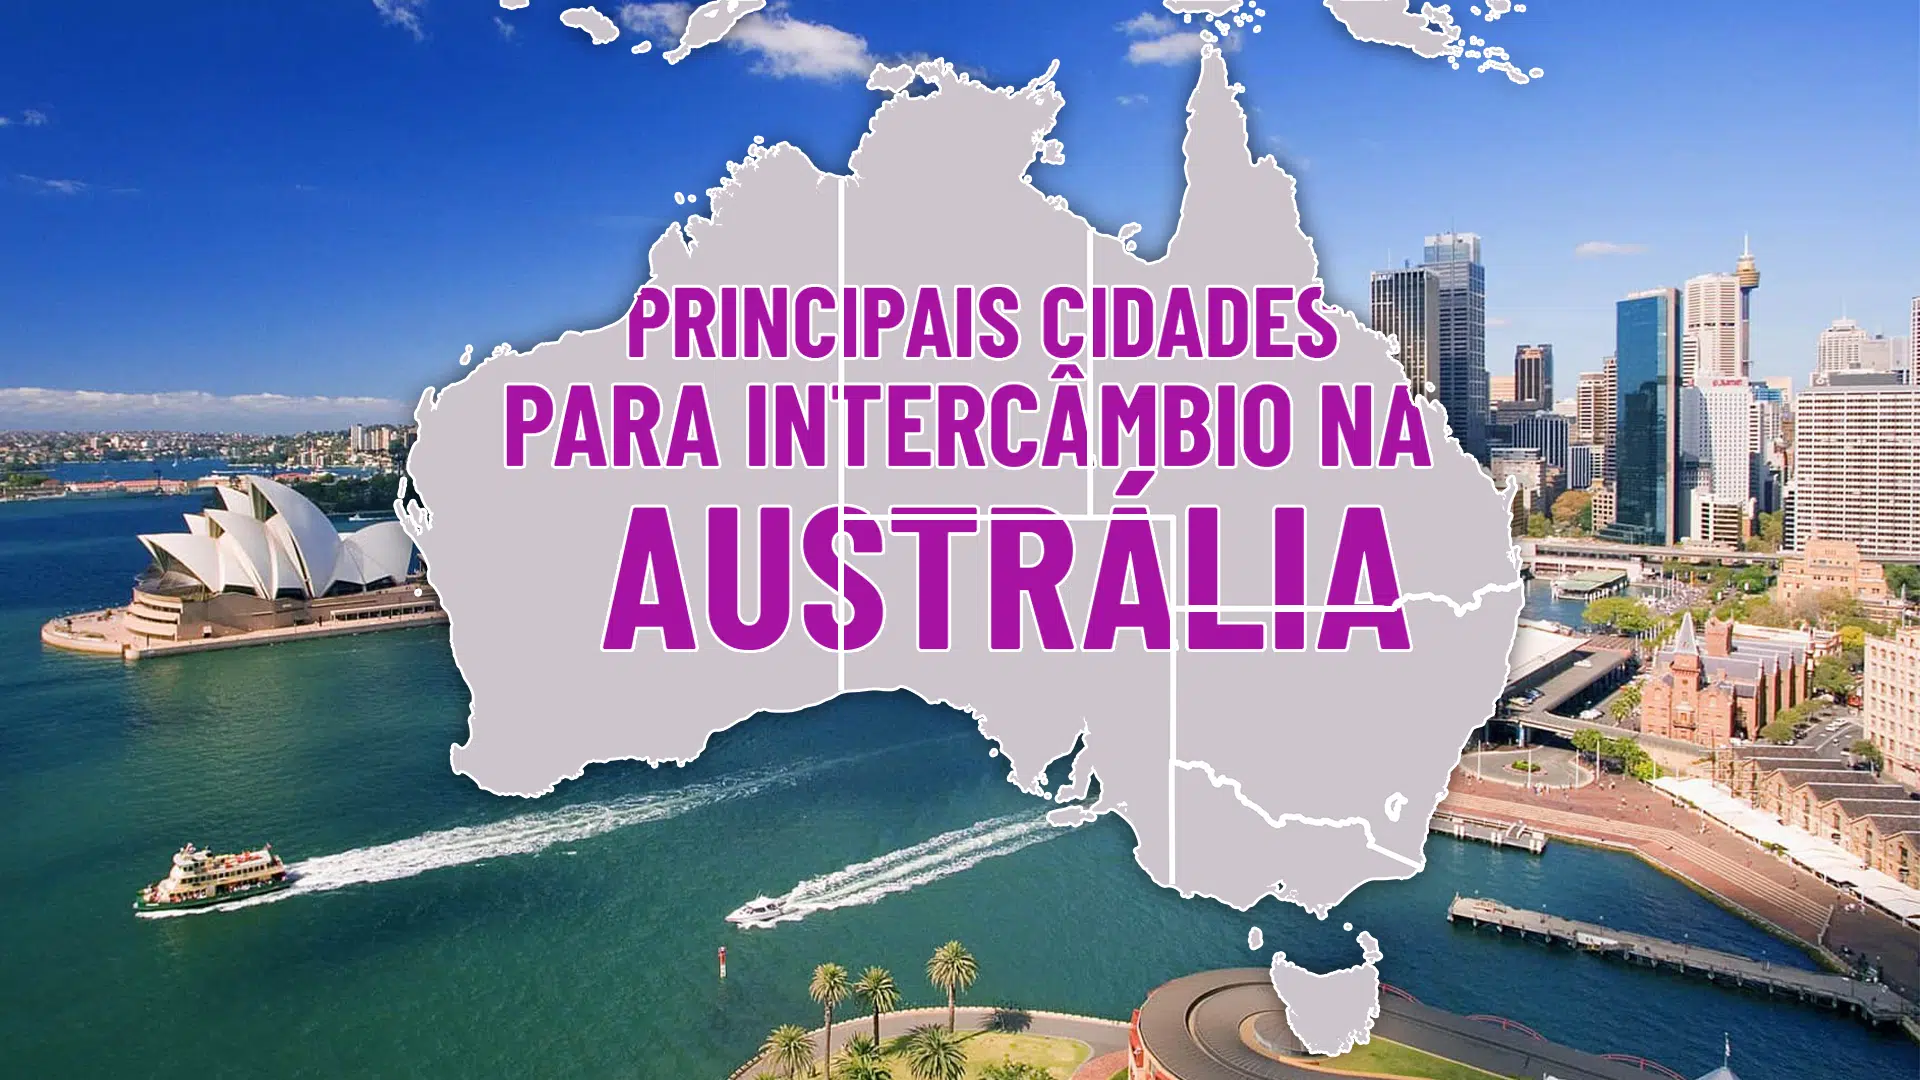 Intercâmbio na Austrália: Conheça as principais cidades